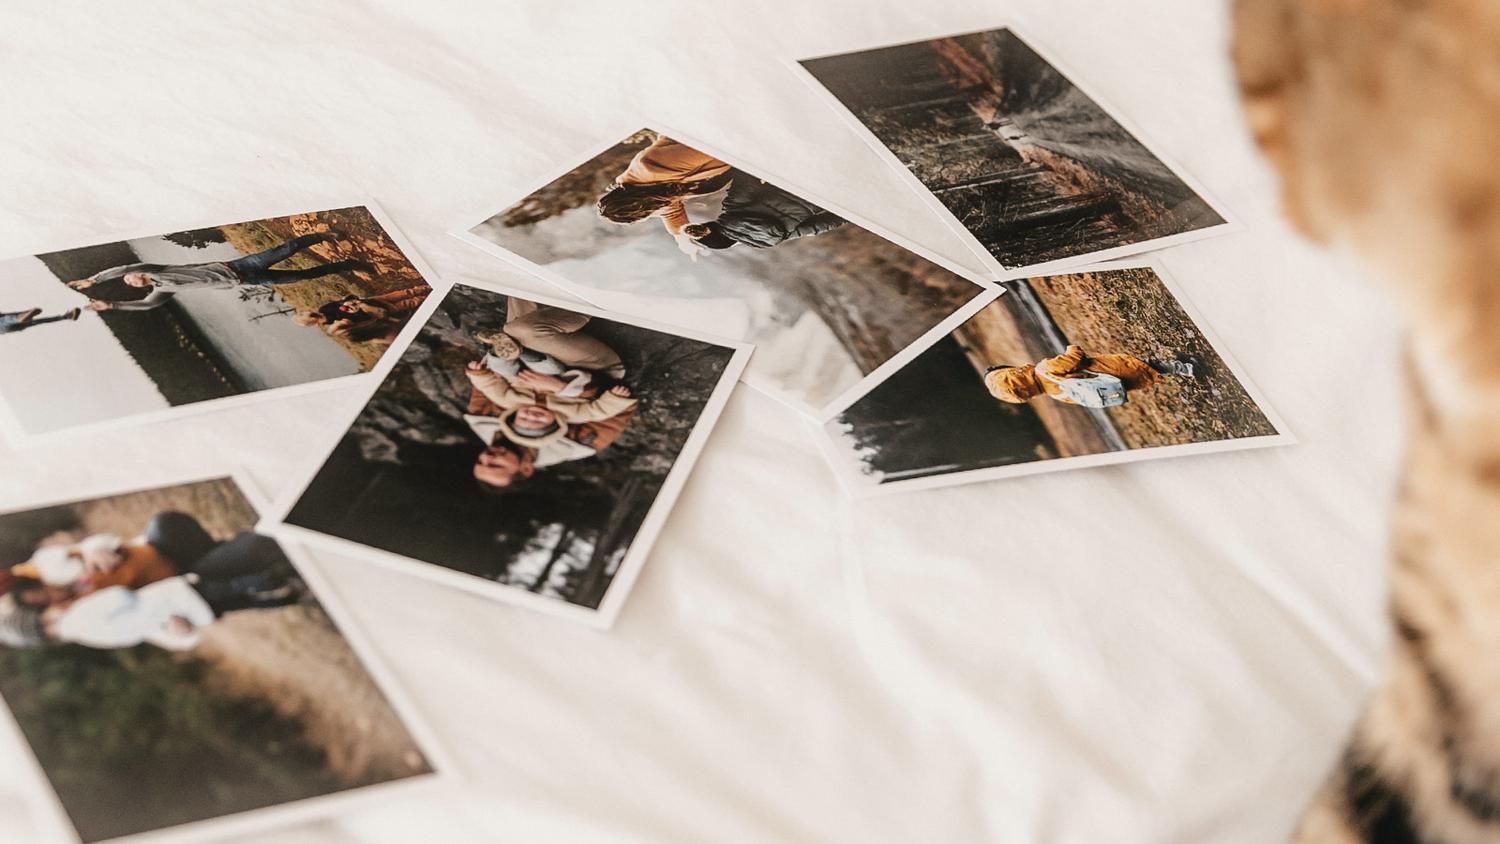 Álbum de fotos polaroid: Crea recuerdos instantáneos con nuestros álbumes  de fotos polaroid personalizados